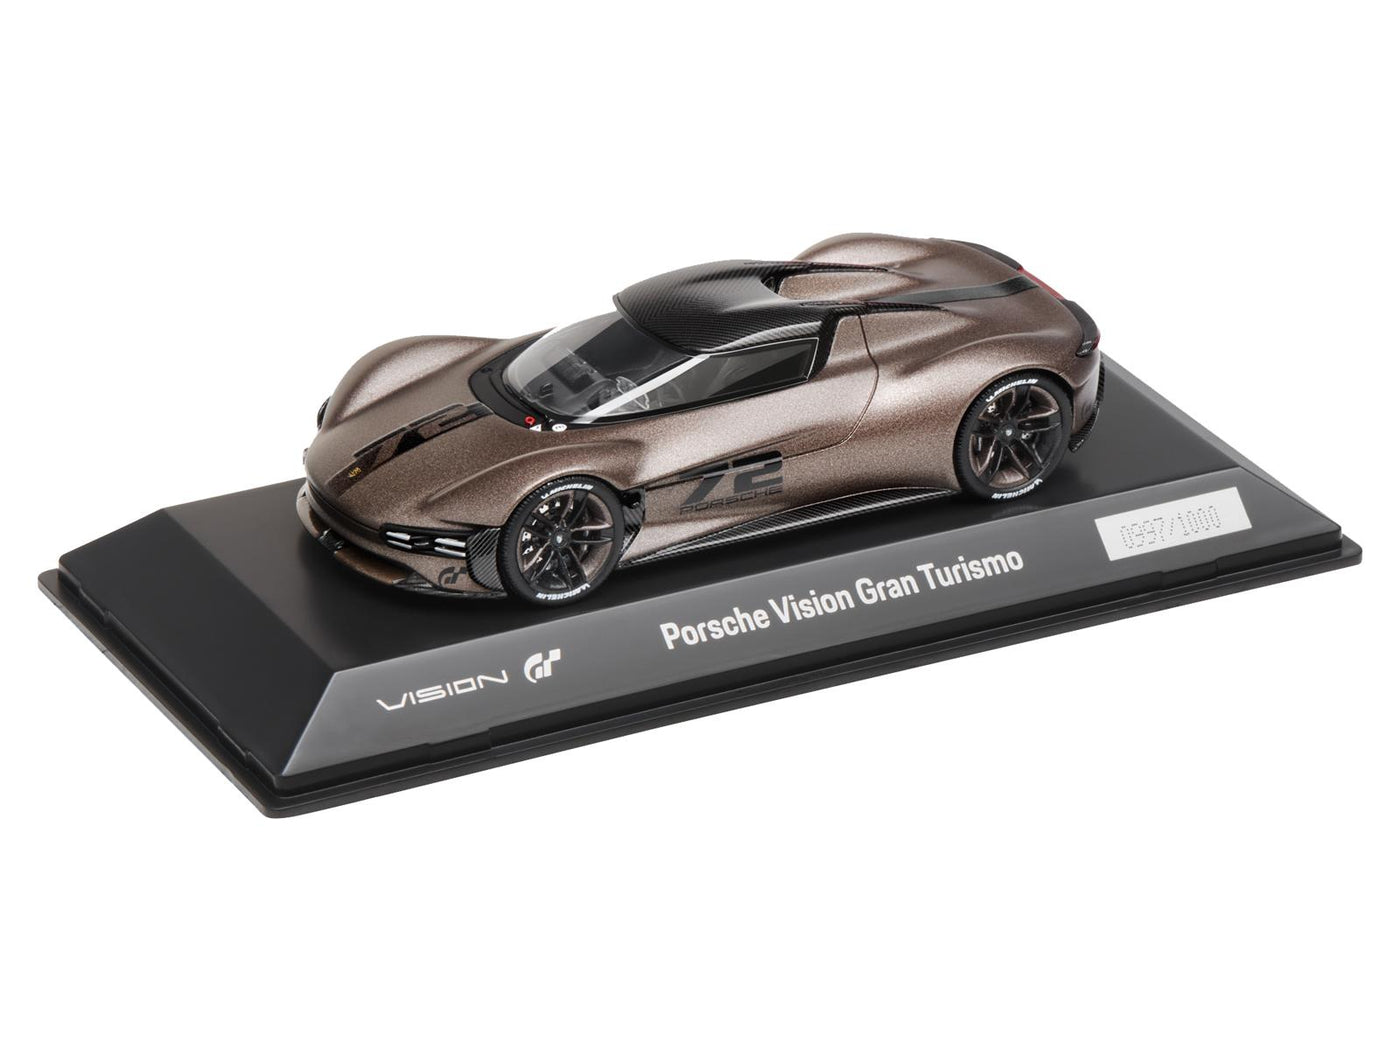 Porsche Lifestyle Vision Gran Turismo Model Car- 1:43 scale